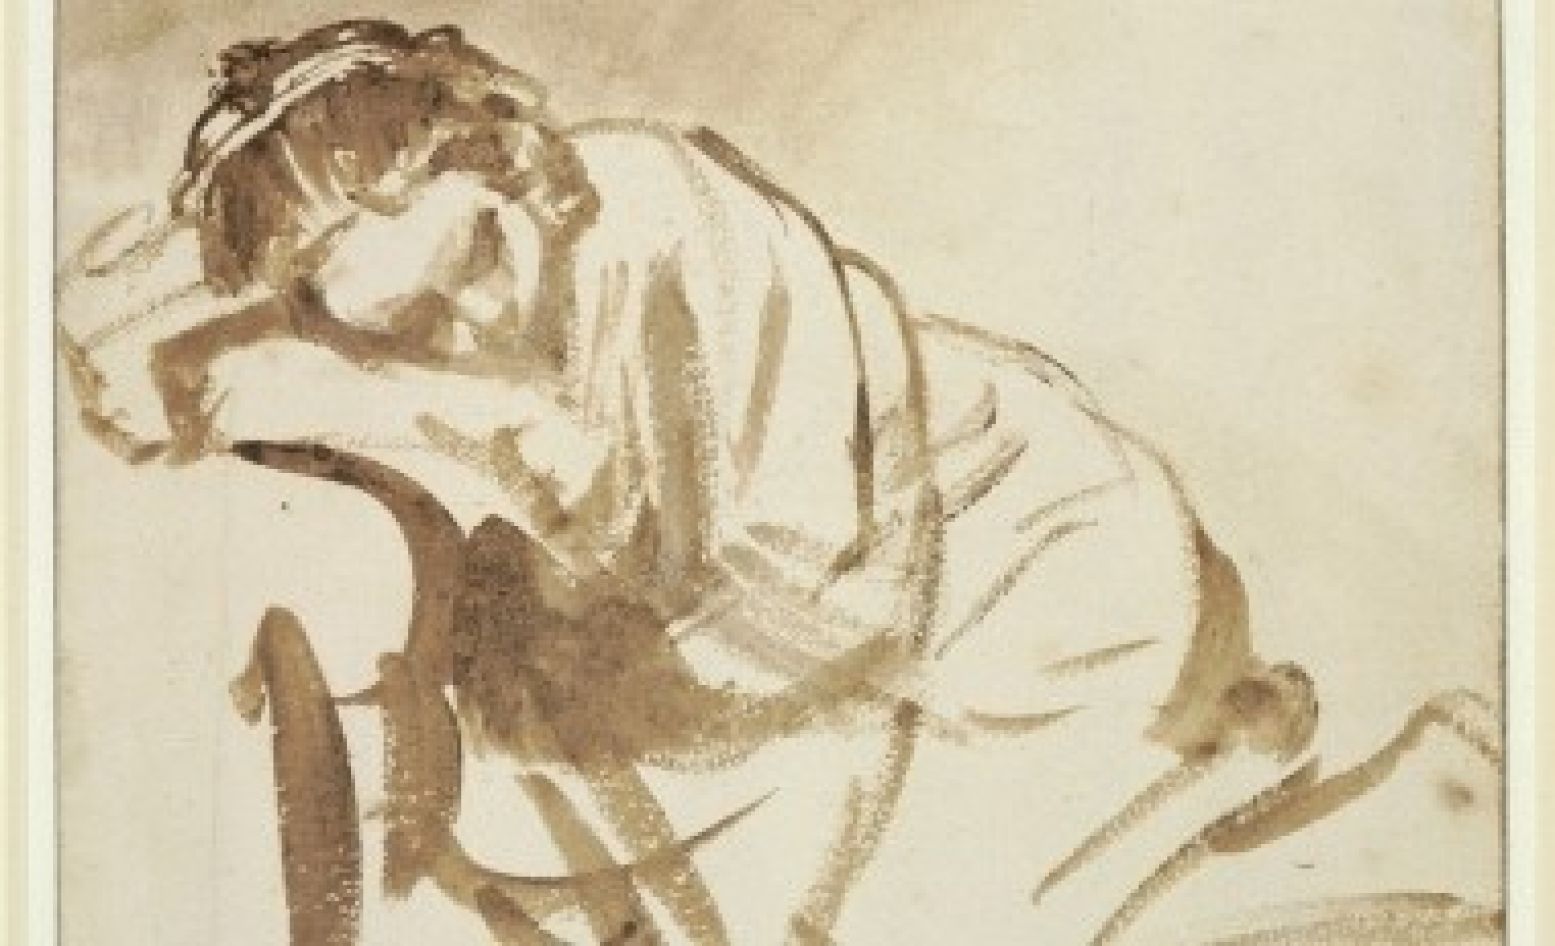 Slapende jonge vrouw (ca. 1654) uit het British Museum in Londen is één van Rembrandts beroemdste tekeningen. De observatie van een intiem moment van heel dichtbij typeert Rembrandts late werk. Foto: Rijksmuseum